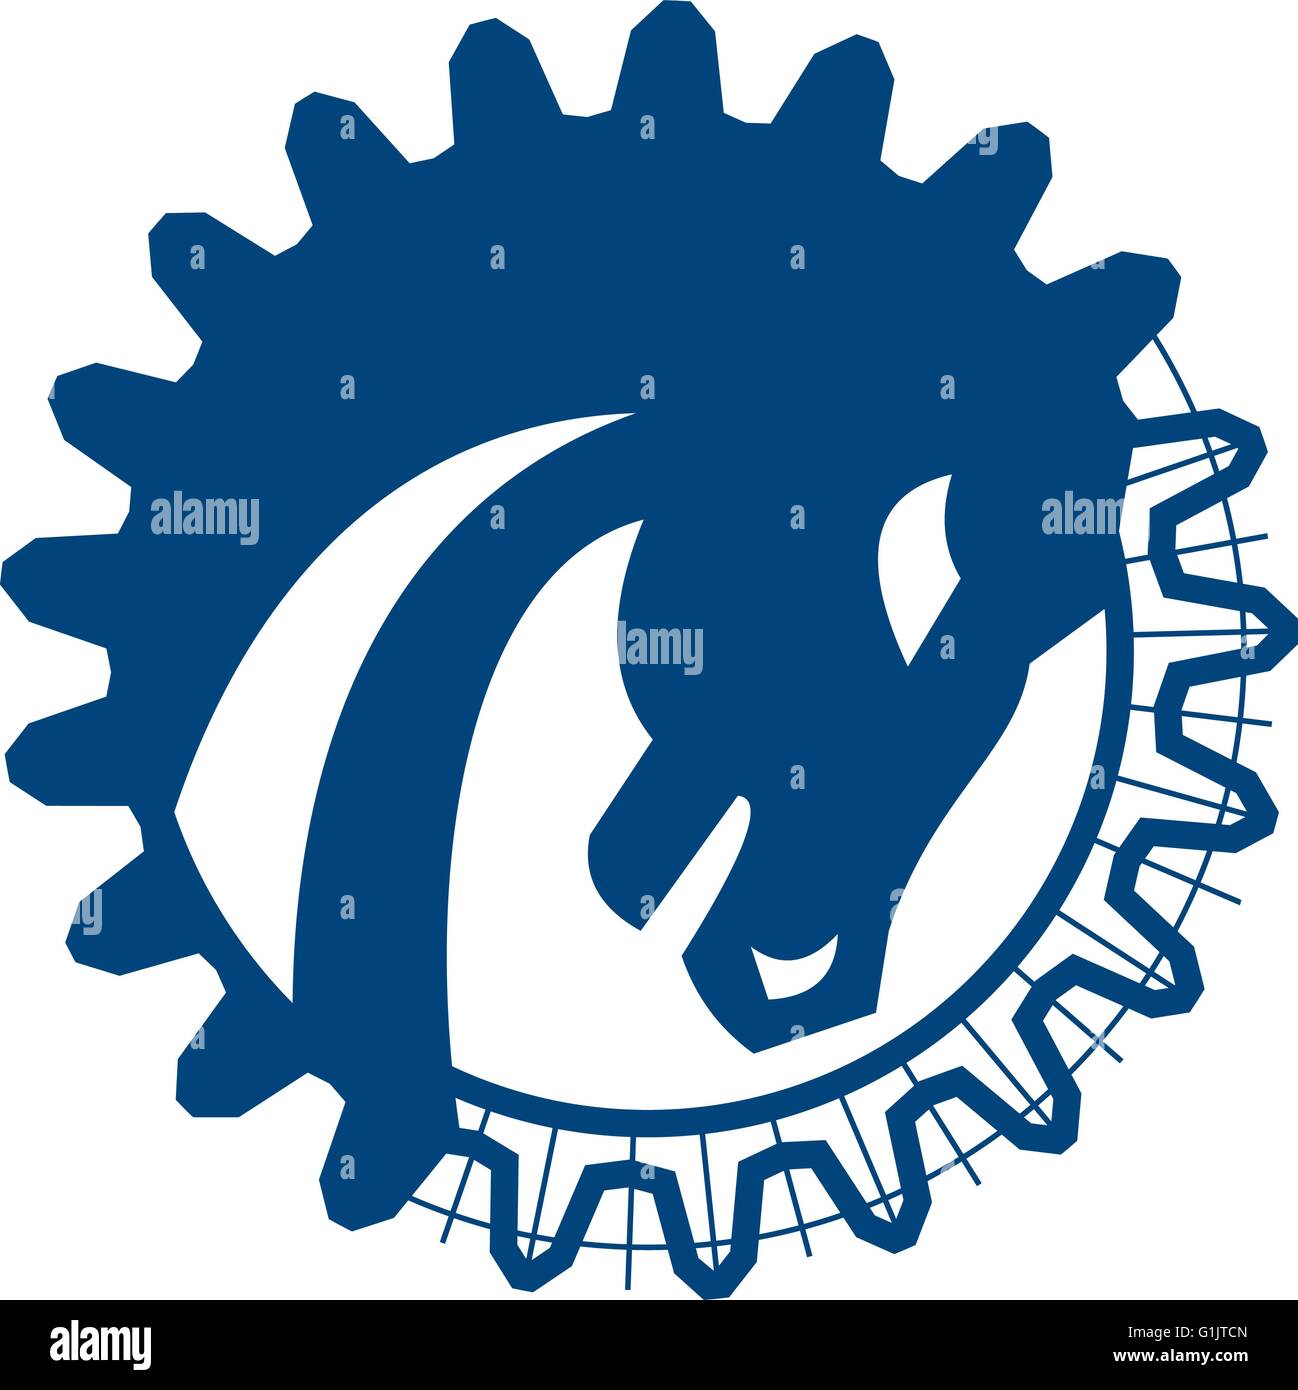 Ilustración de un rojo vista lateral de la cabeza del caballo de guerra establecido dentro del círculo y dientes de engranaje forma hecho en dibujo de la línea blue print en aislar Ilustración del Vector